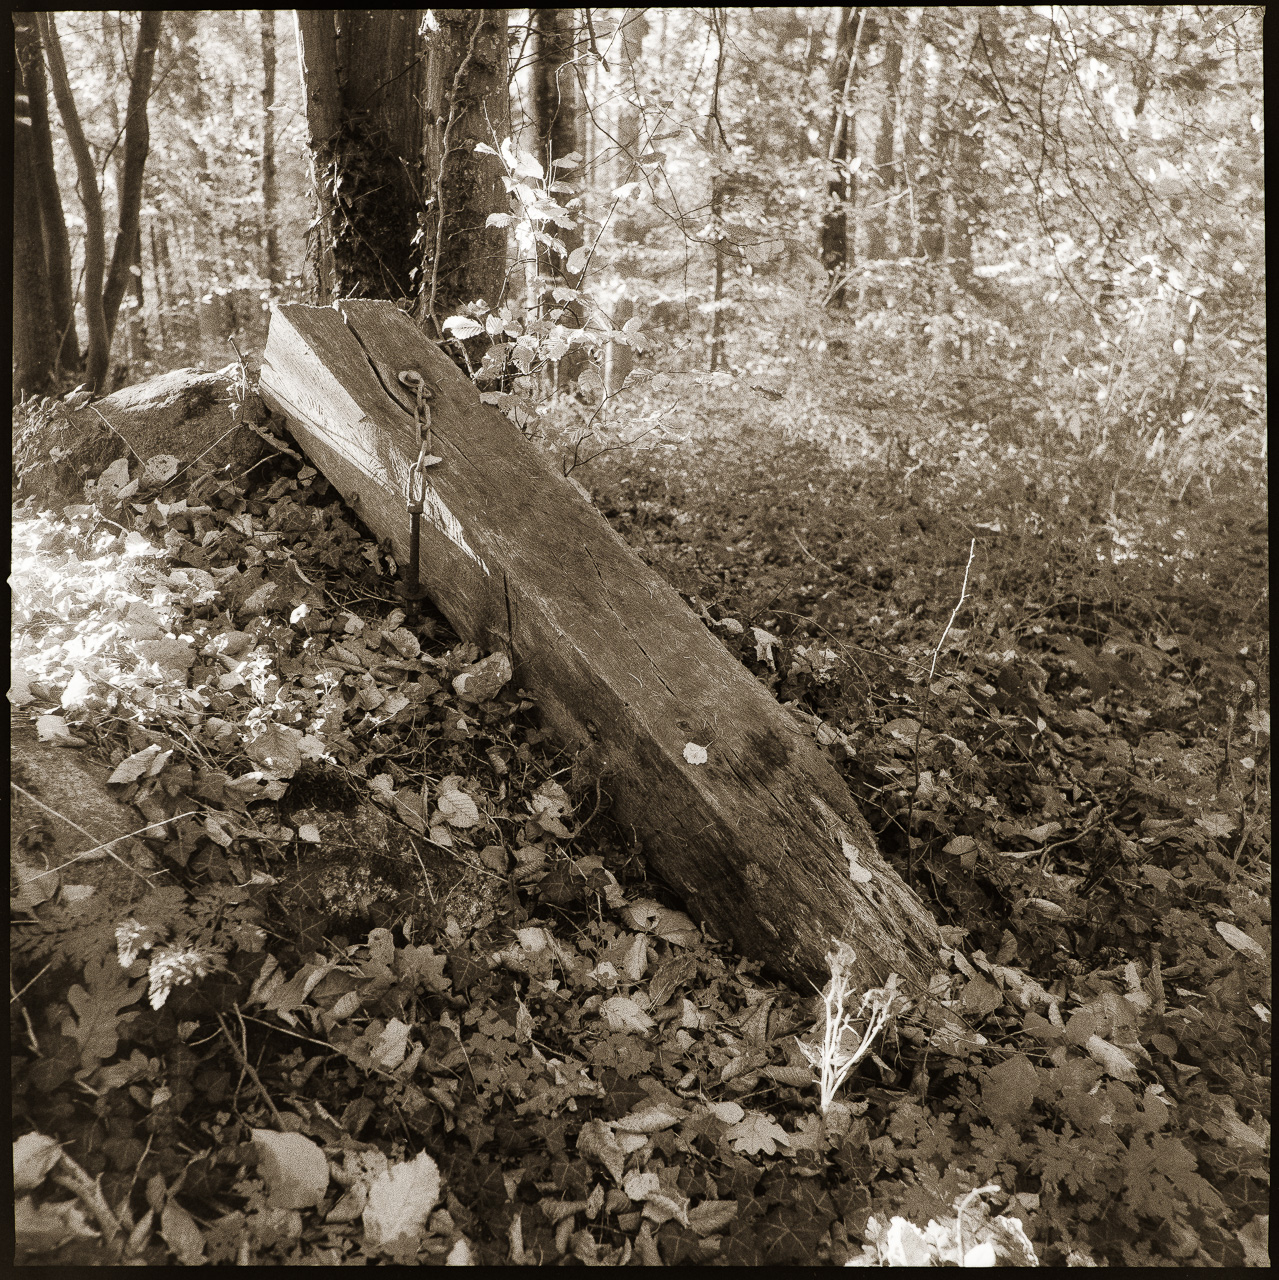 Quadratisches SchwarzWeißBild: Ein abgebrochener Pfosten einer WegaAbsperrung liegt im Wald auf einem Haufen von Blättern